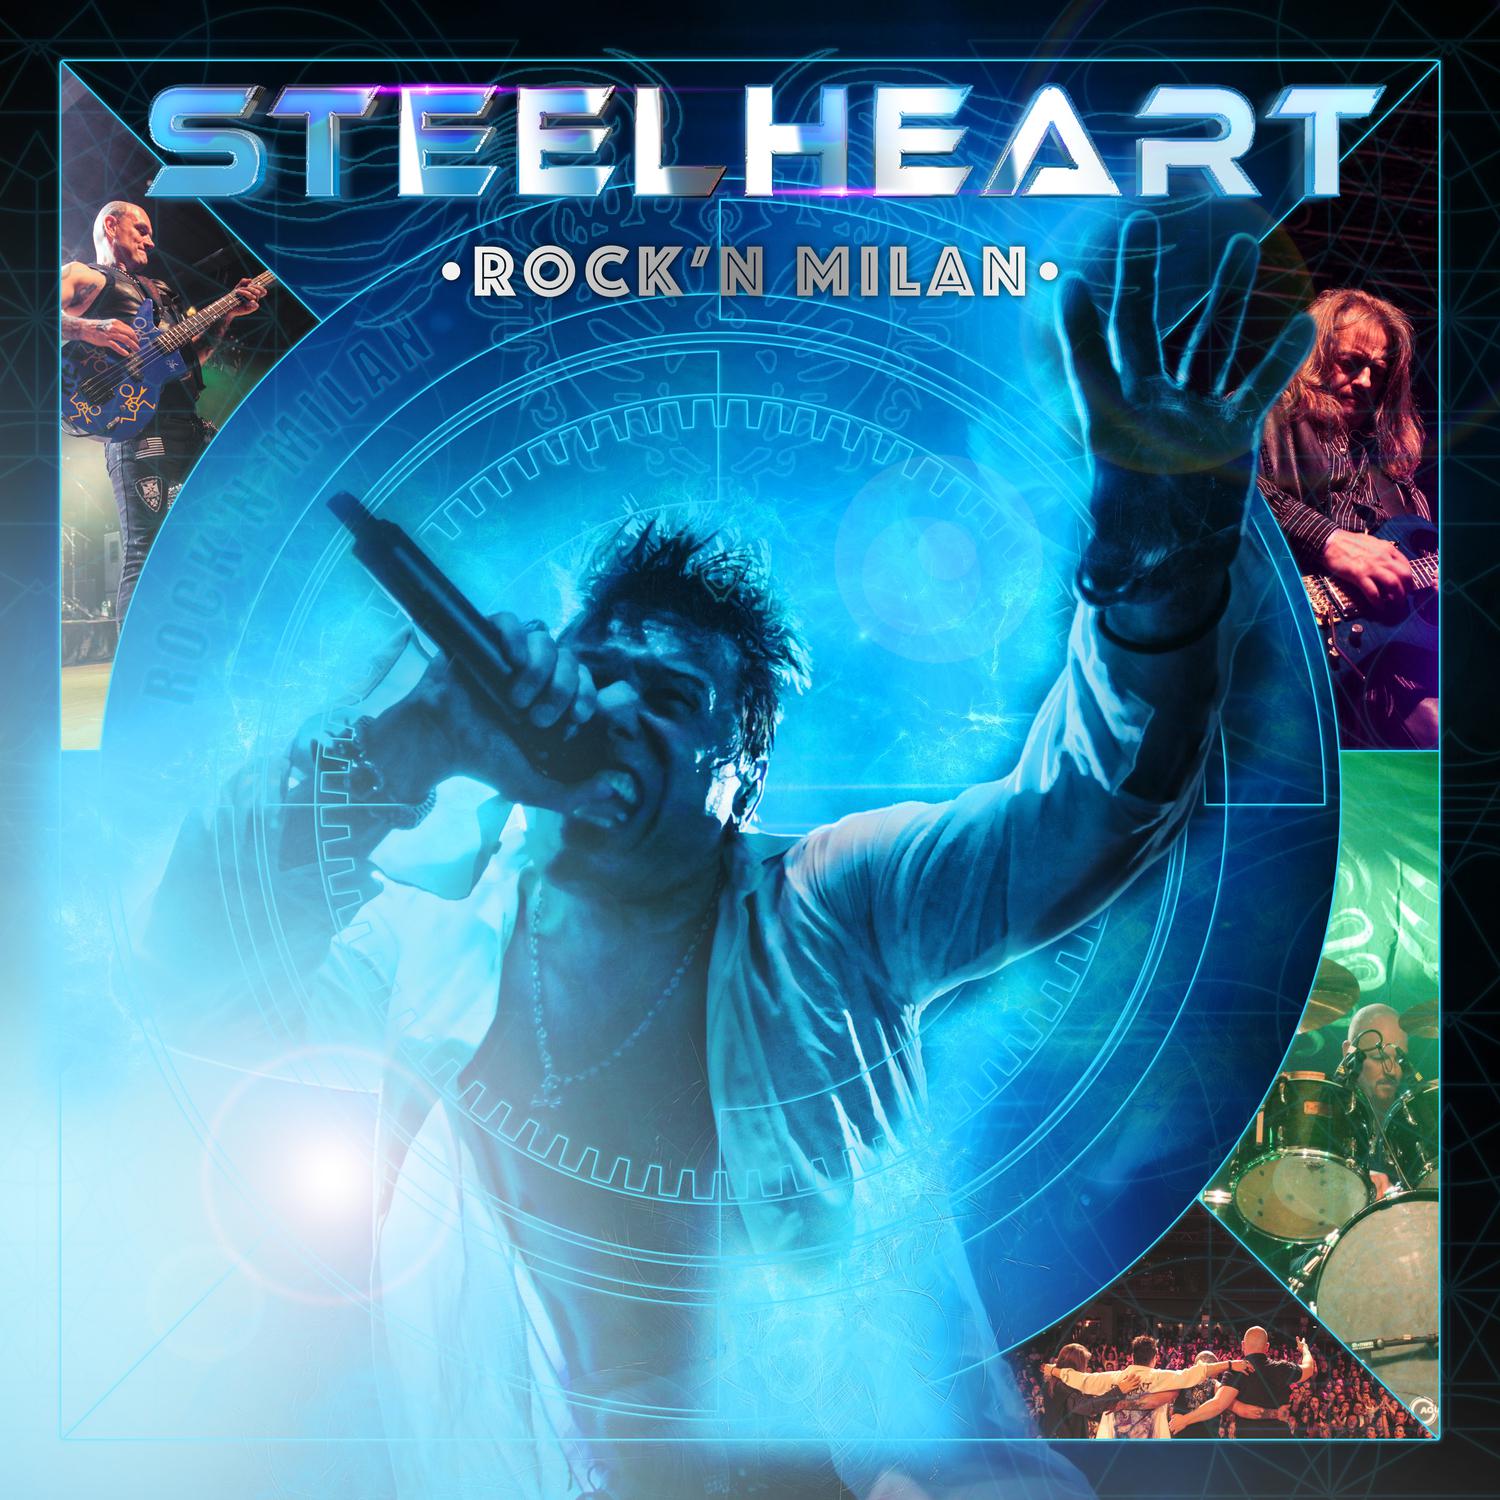 Steelheart - Rock 'n' Roll (I Just Wanna) (Live)